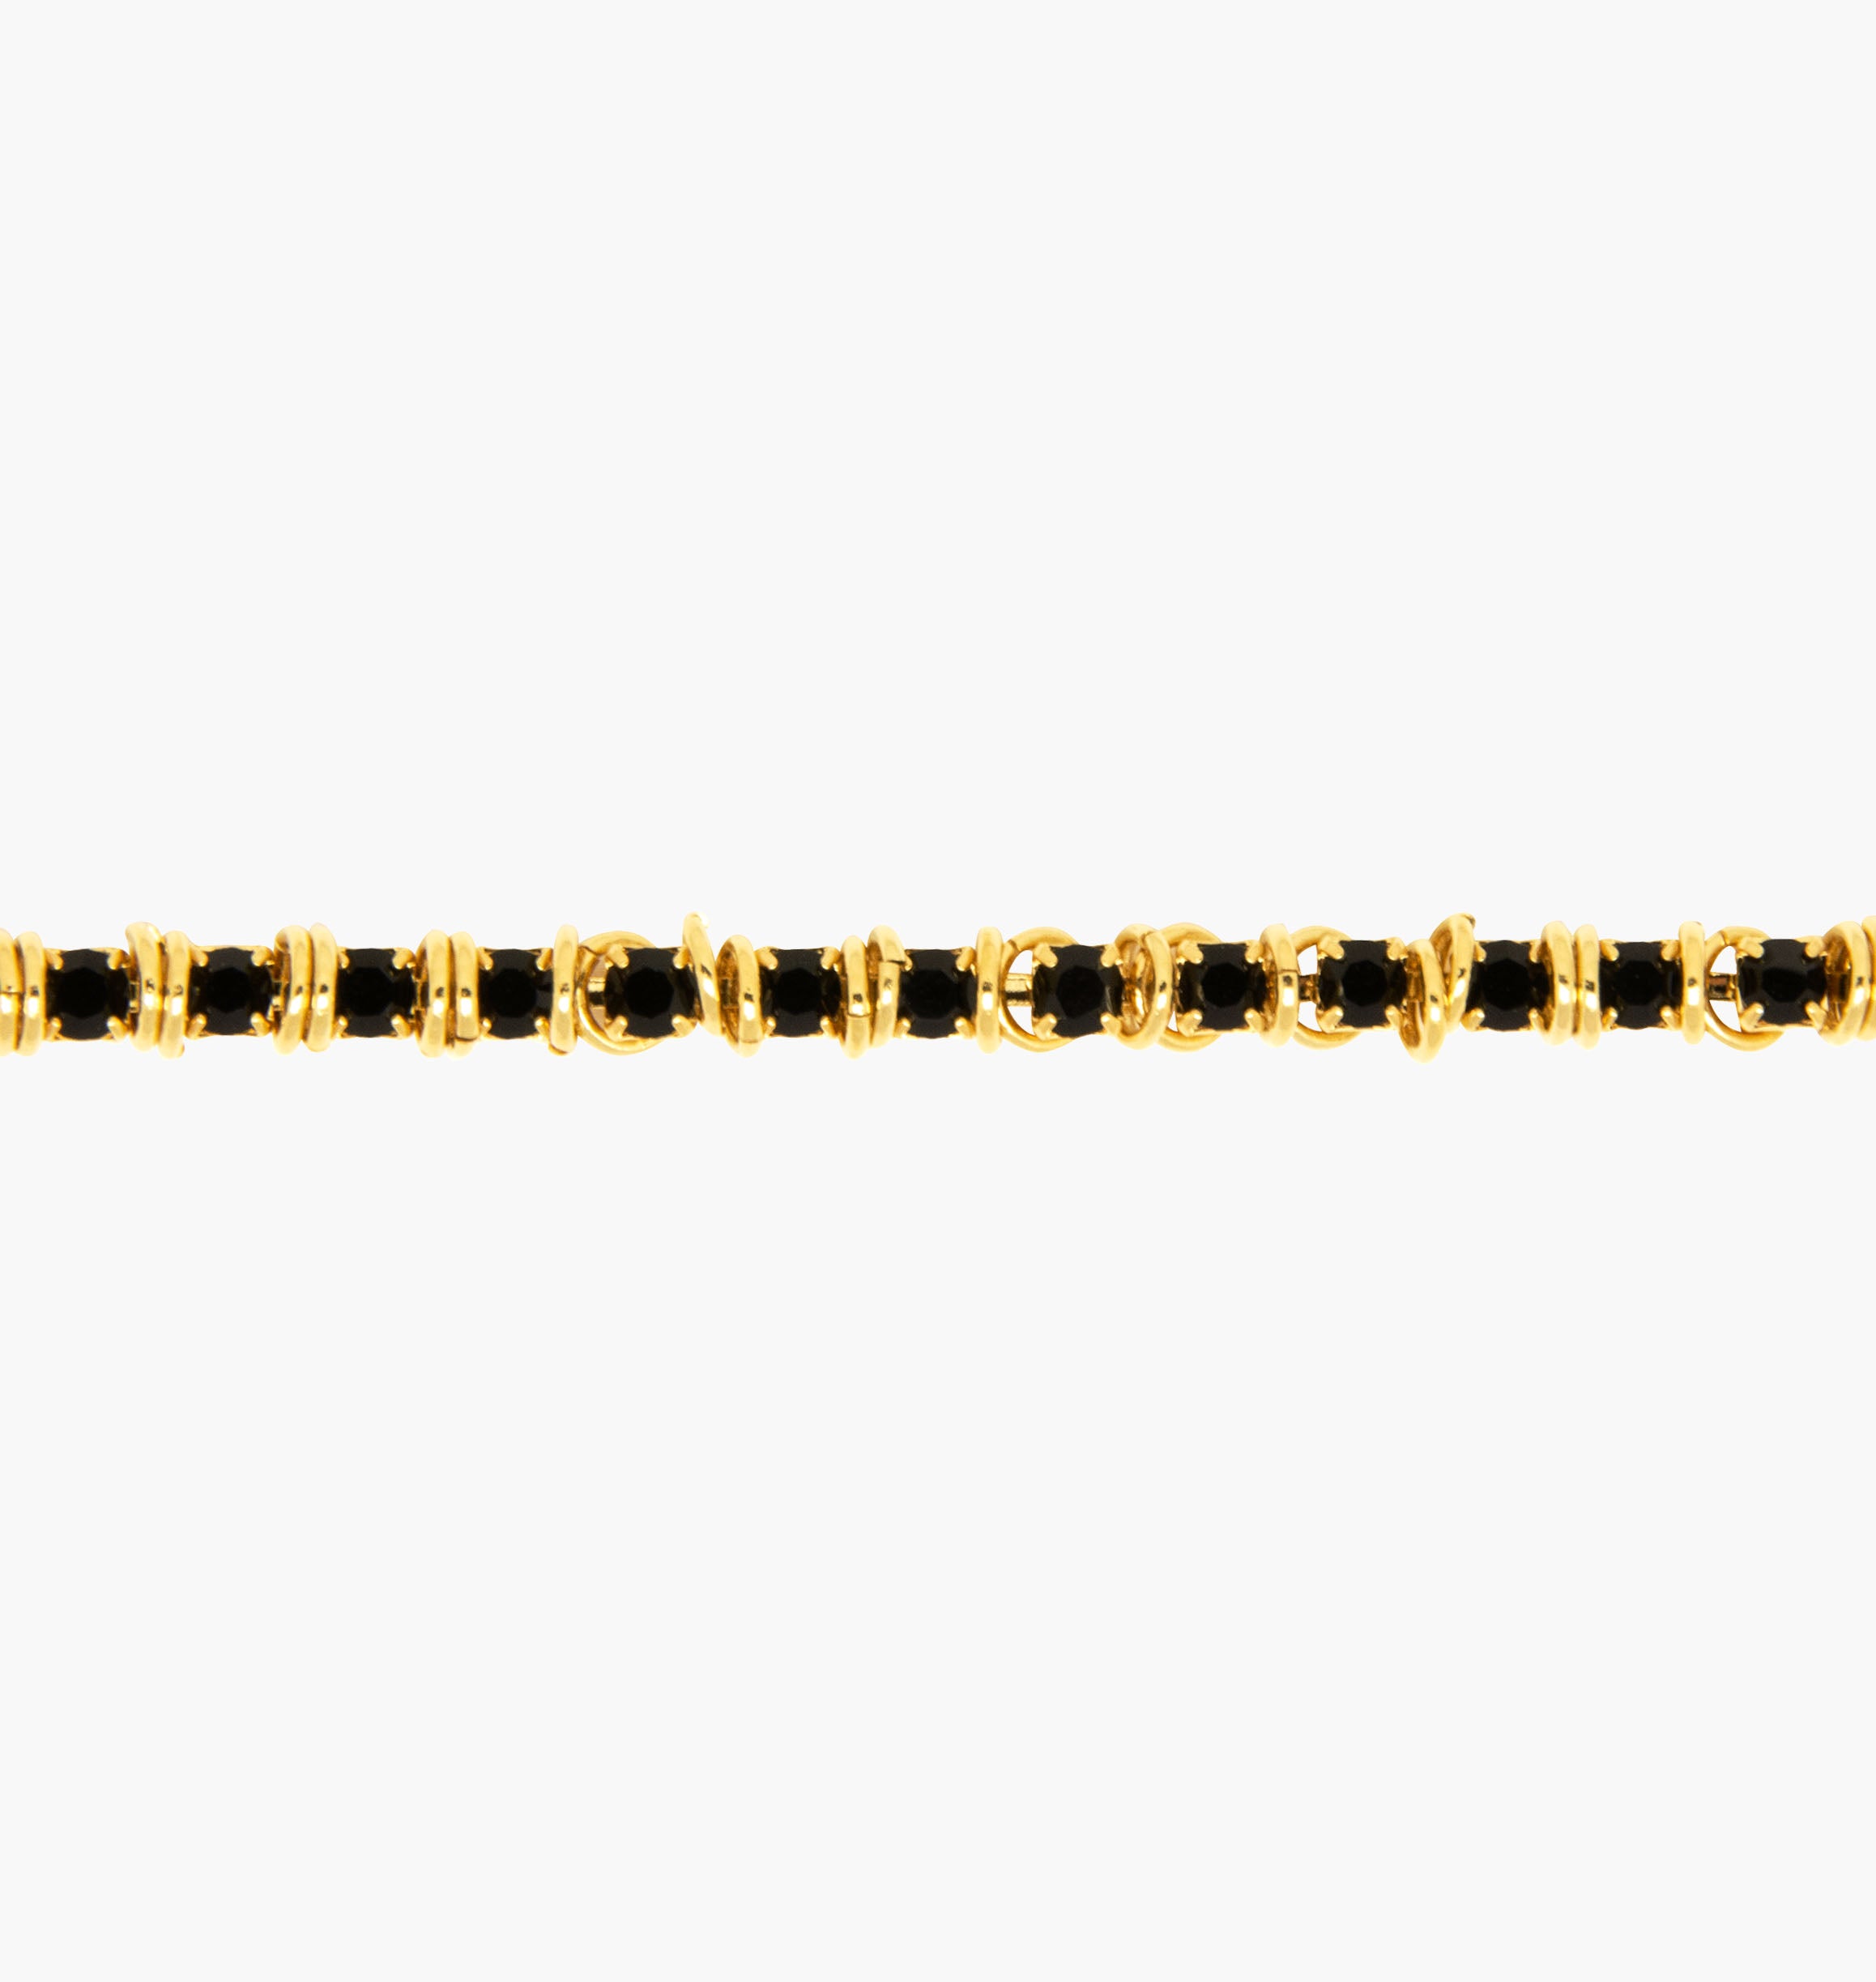 Bracelet LUCIOLE Black - shop.mouttoncollet.com, Moutton colleT Notre bracelet LUCIOLE est réalisé en bronze dorées à l'or fin, serties de cristaux scintillants coloris noir avec de grands anneaux. Il est orné d'un médaillon gravé "Moutton colleT" et d'un petit logo gravé "MC". Il sera assez discret pour être associé à vos tenues du quotidien.